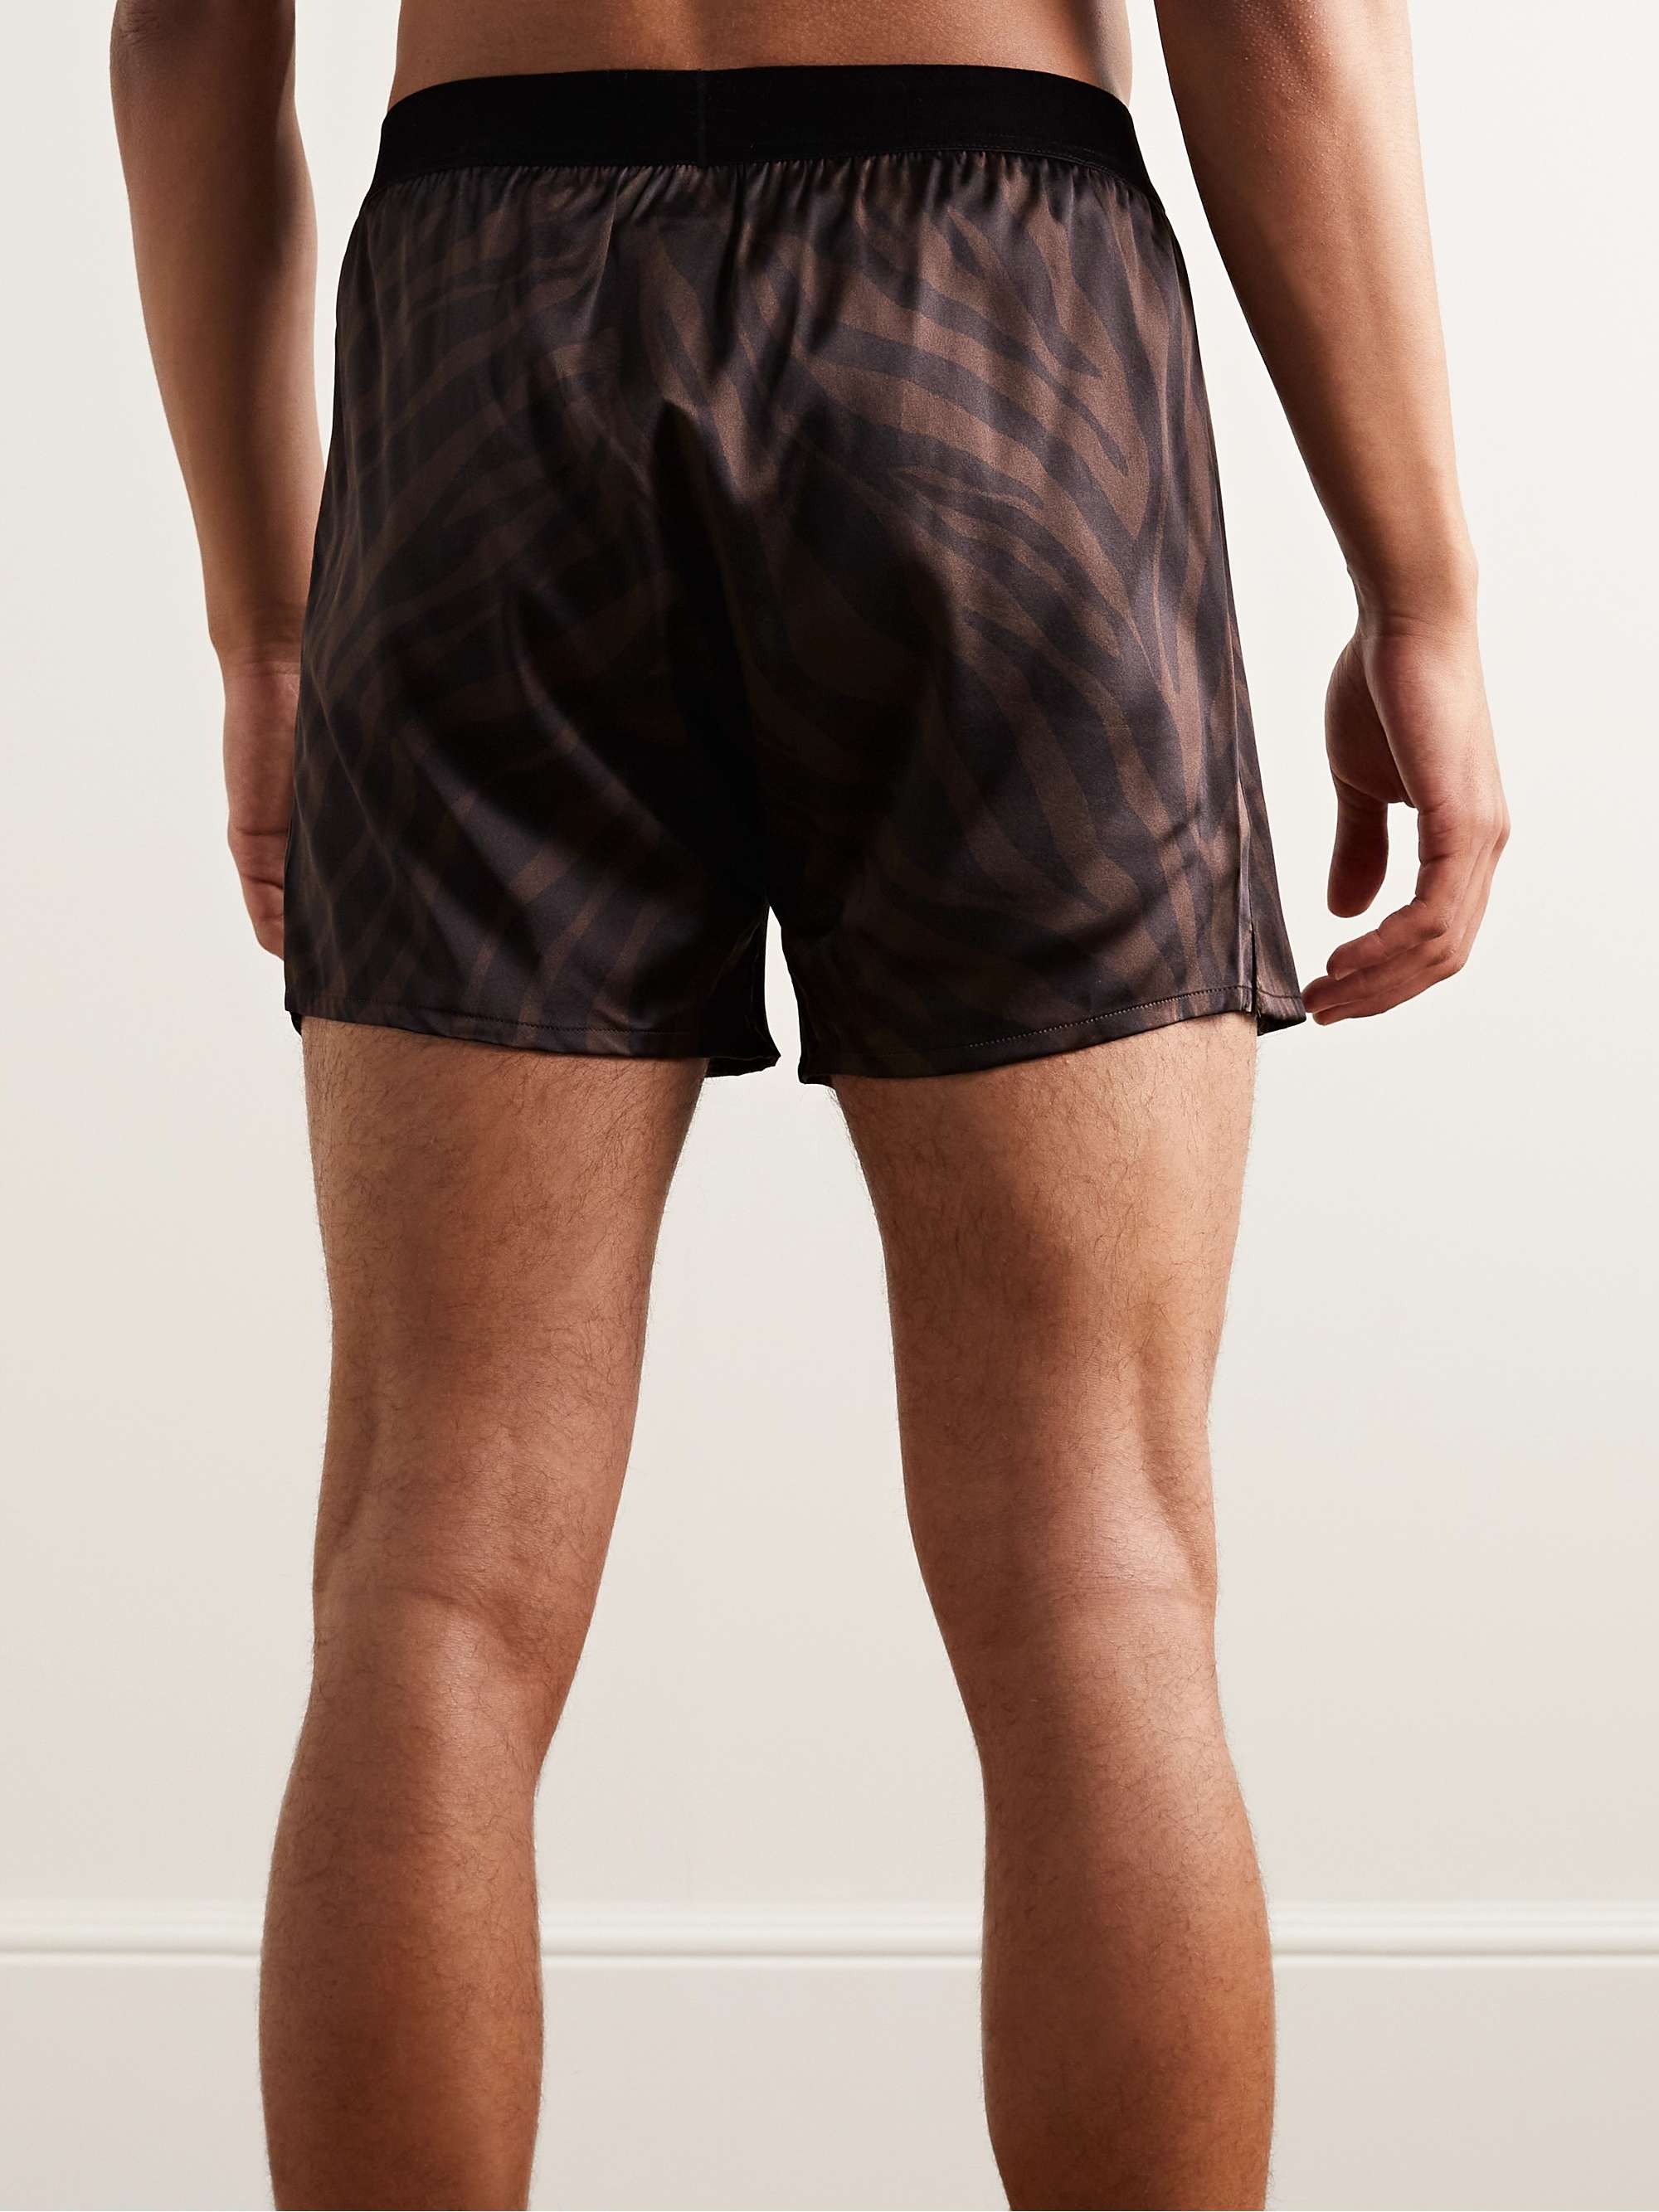 TOM FORD Zebra-Print Velvet-Trimmed Silk-Satin Boxer Shorts